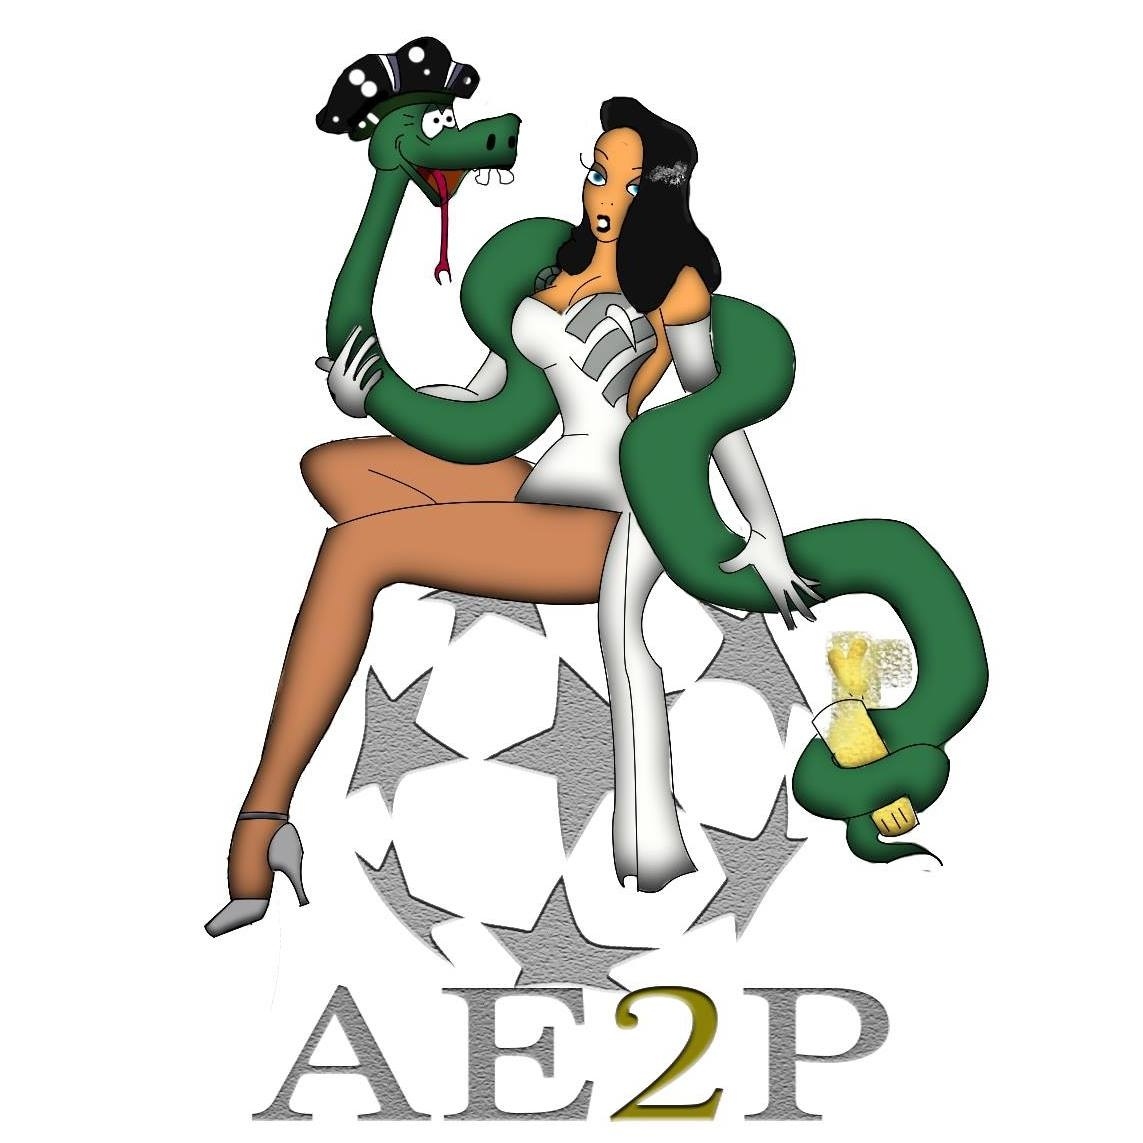 AE2P (Association des Etudiants en Pharmacie de Provence)